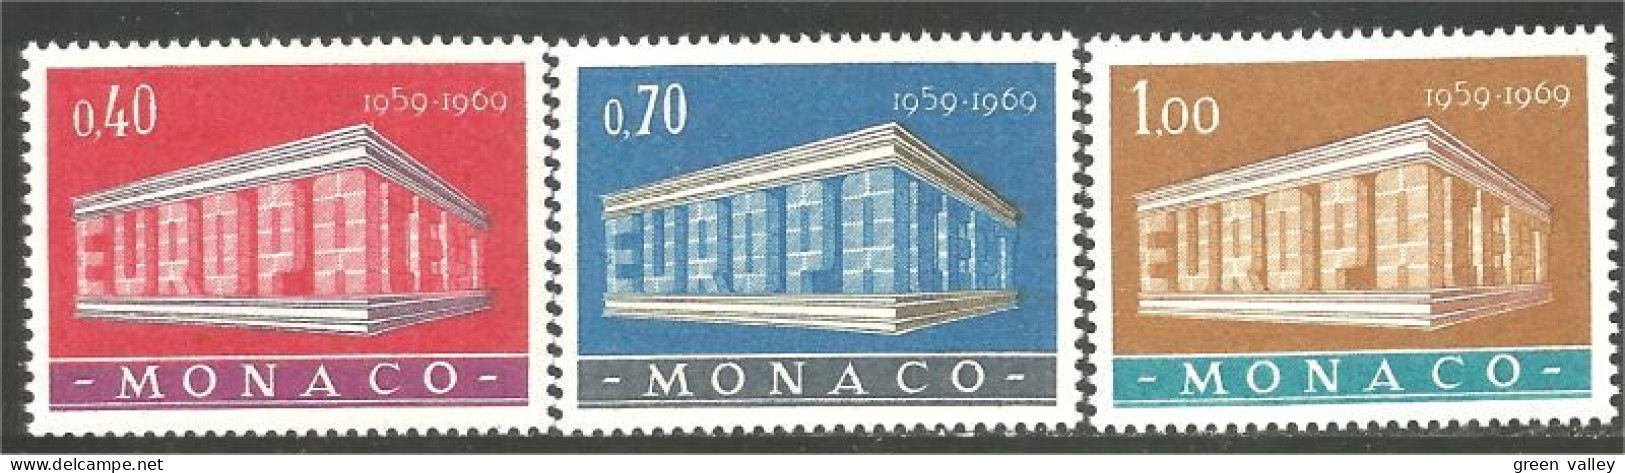 630 Monaco Yv 789-791 Europa 1969 MNH ** Neuf SC (MON-825) - 1969